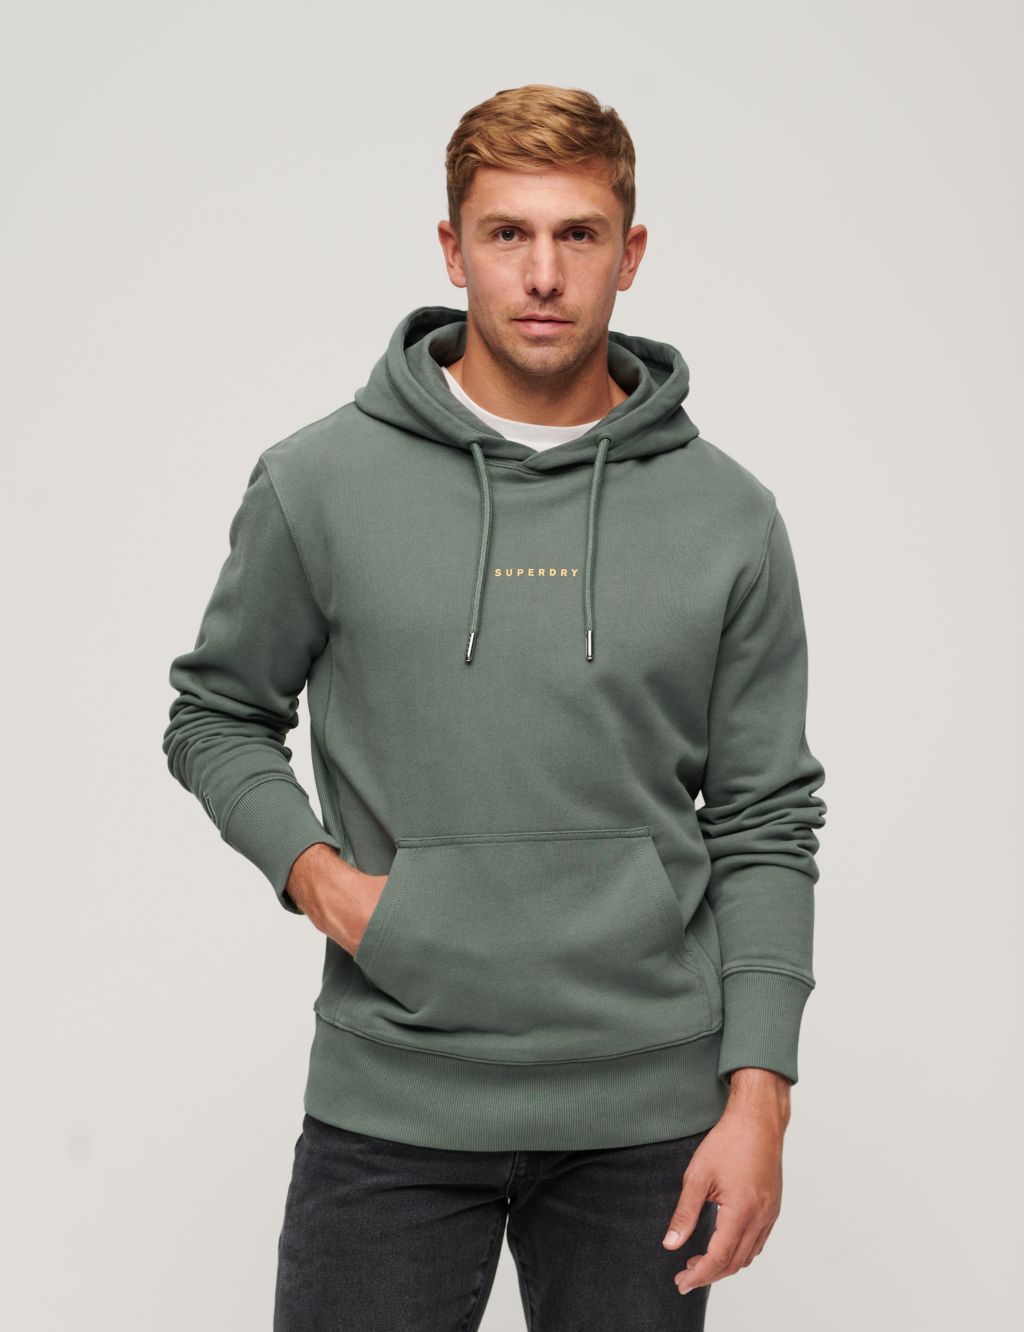 Men’s Green Hoodies & Sweatshirts | M&S